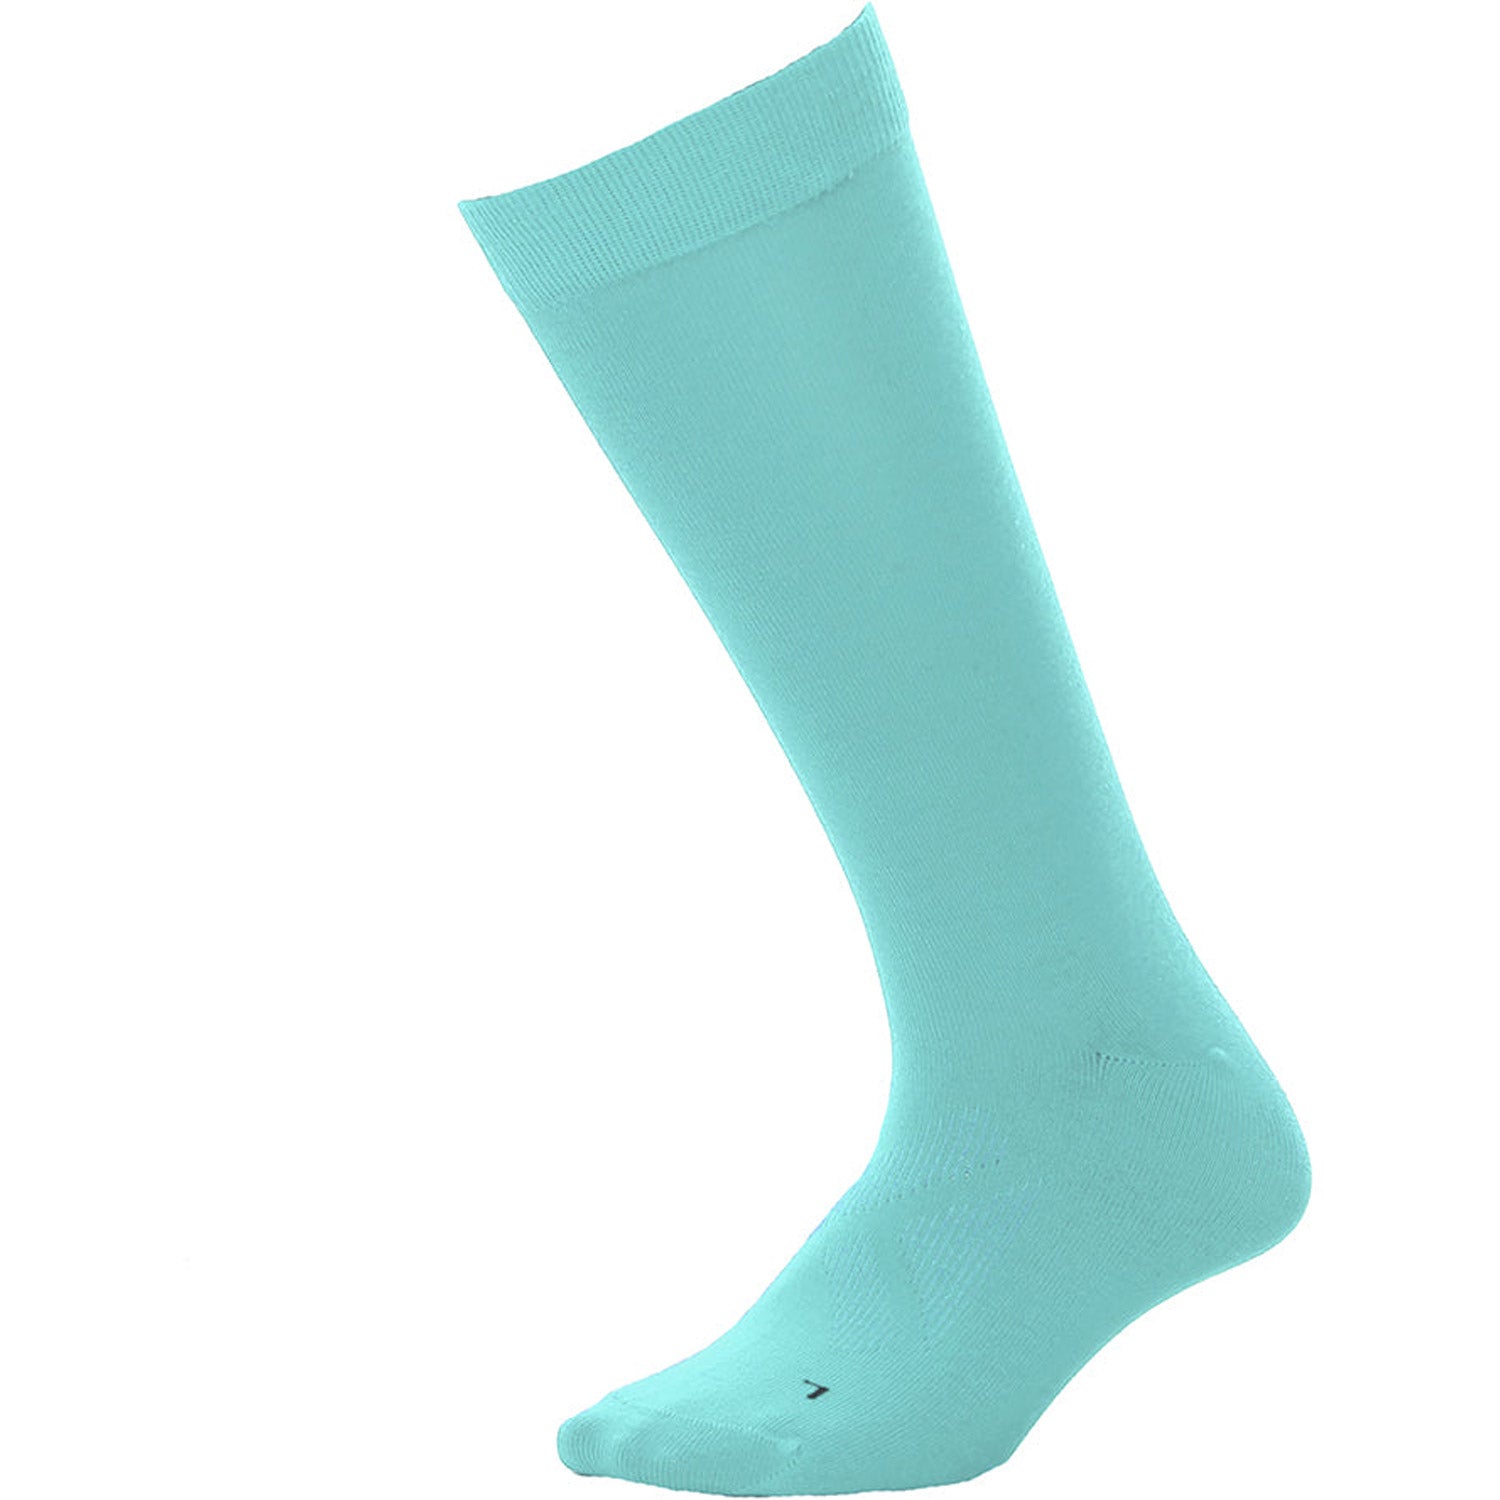 Merino Pro Fit II Australian Merino Wool Socks